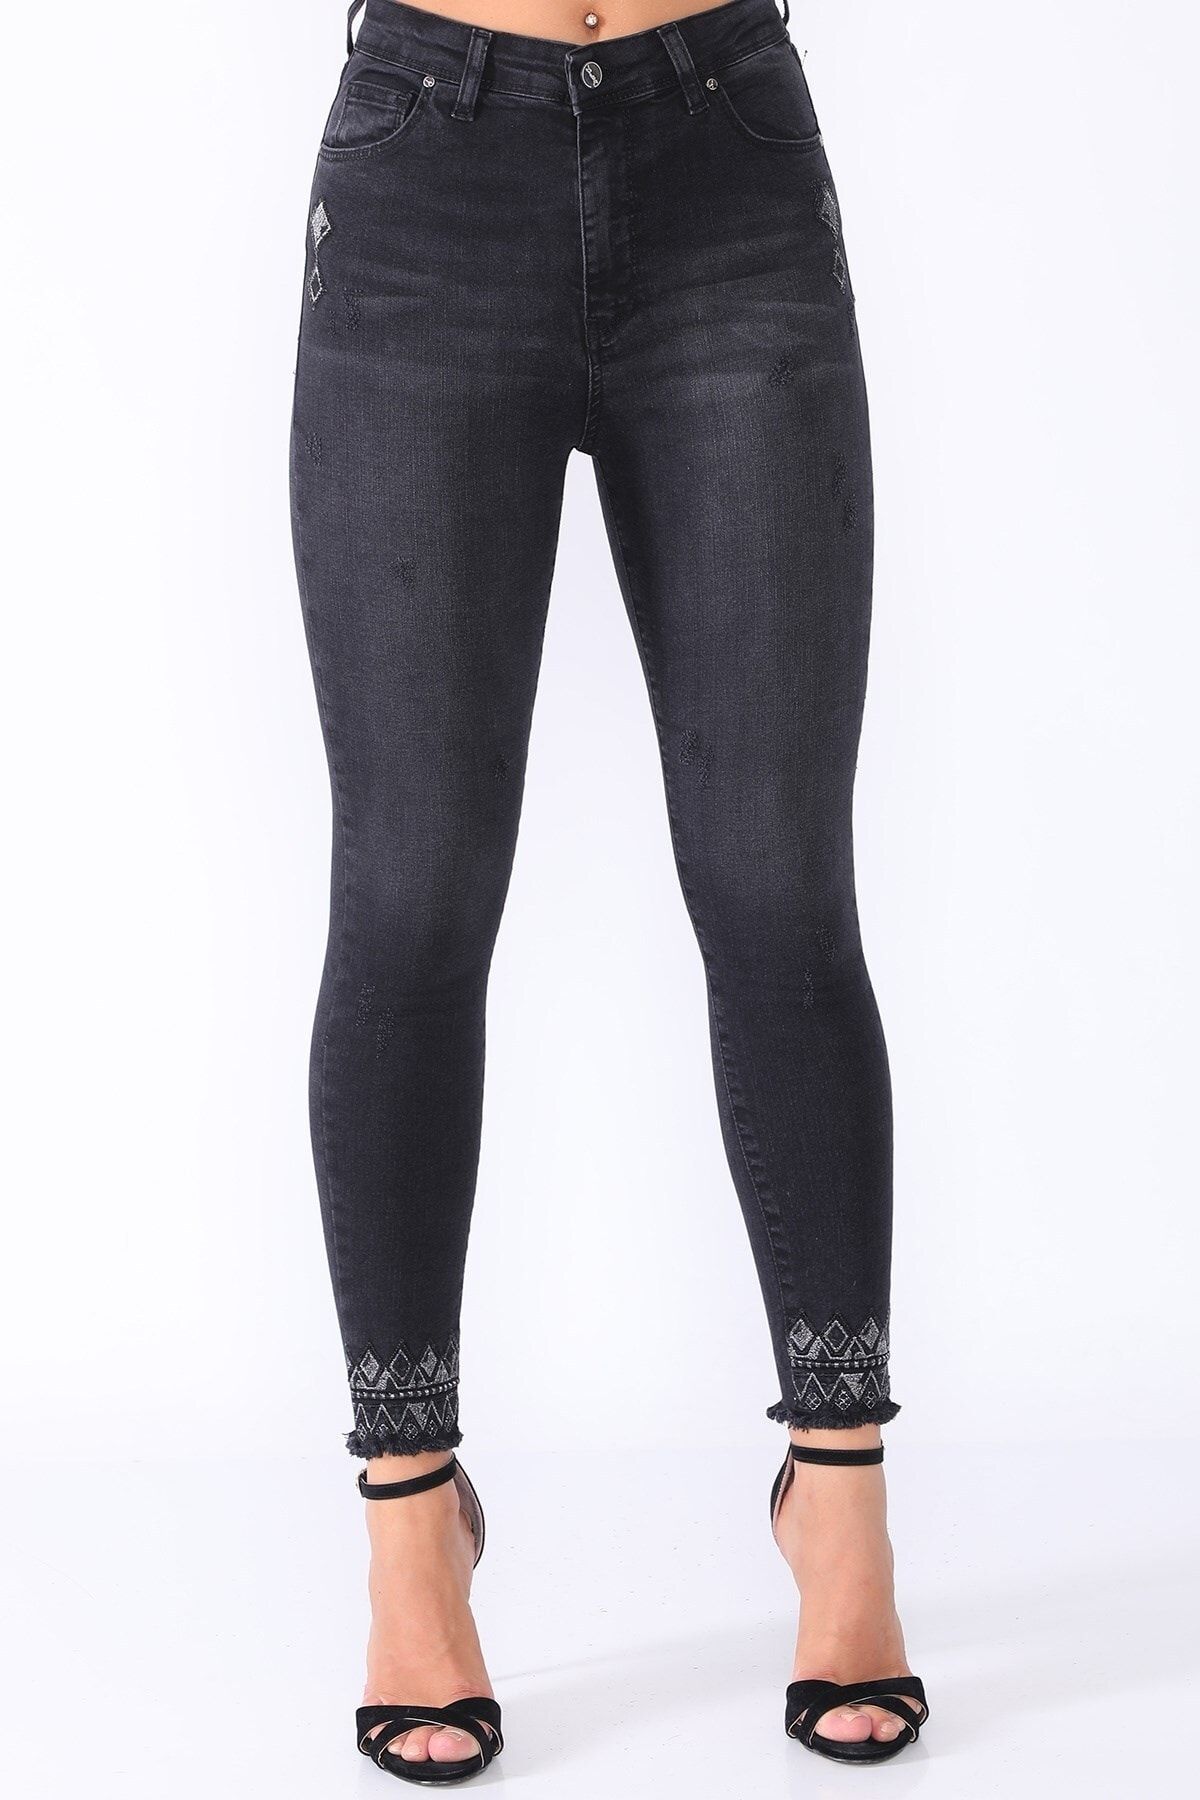 PodiumStar Kadın Siyah Paçası Ve Yanları Pullu Nakışlı Likralı Kot Pantolon